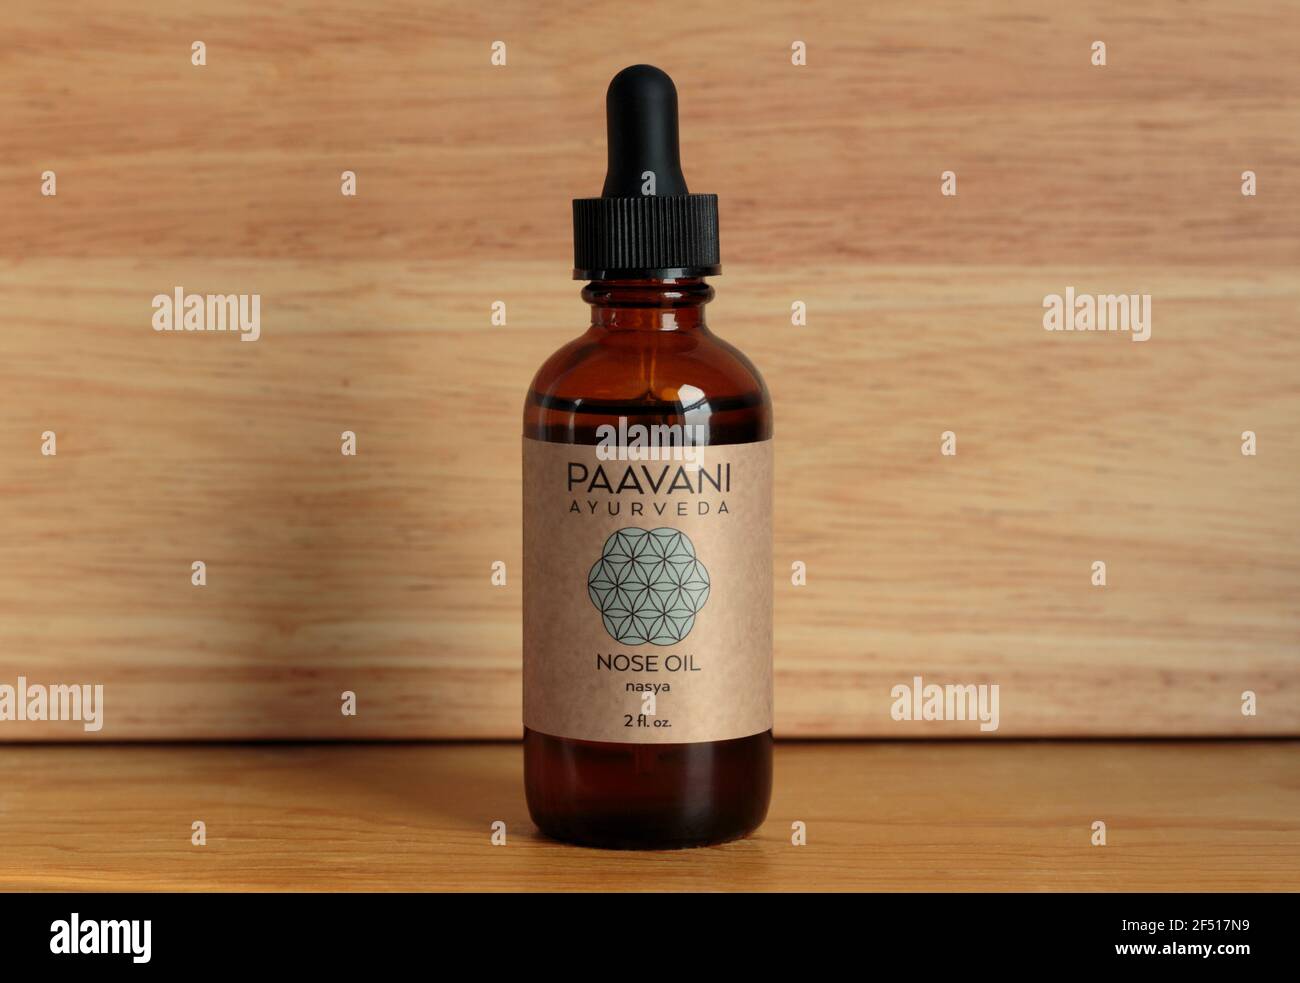 Flasche Paavani Marke Ayurveda nasya Nasenöl, Kräuter-infundiert Sesamöl verwendet, um zu schmieren und zu löschen die Nasengänge in der ayurvedischen Praxis Stockfoto